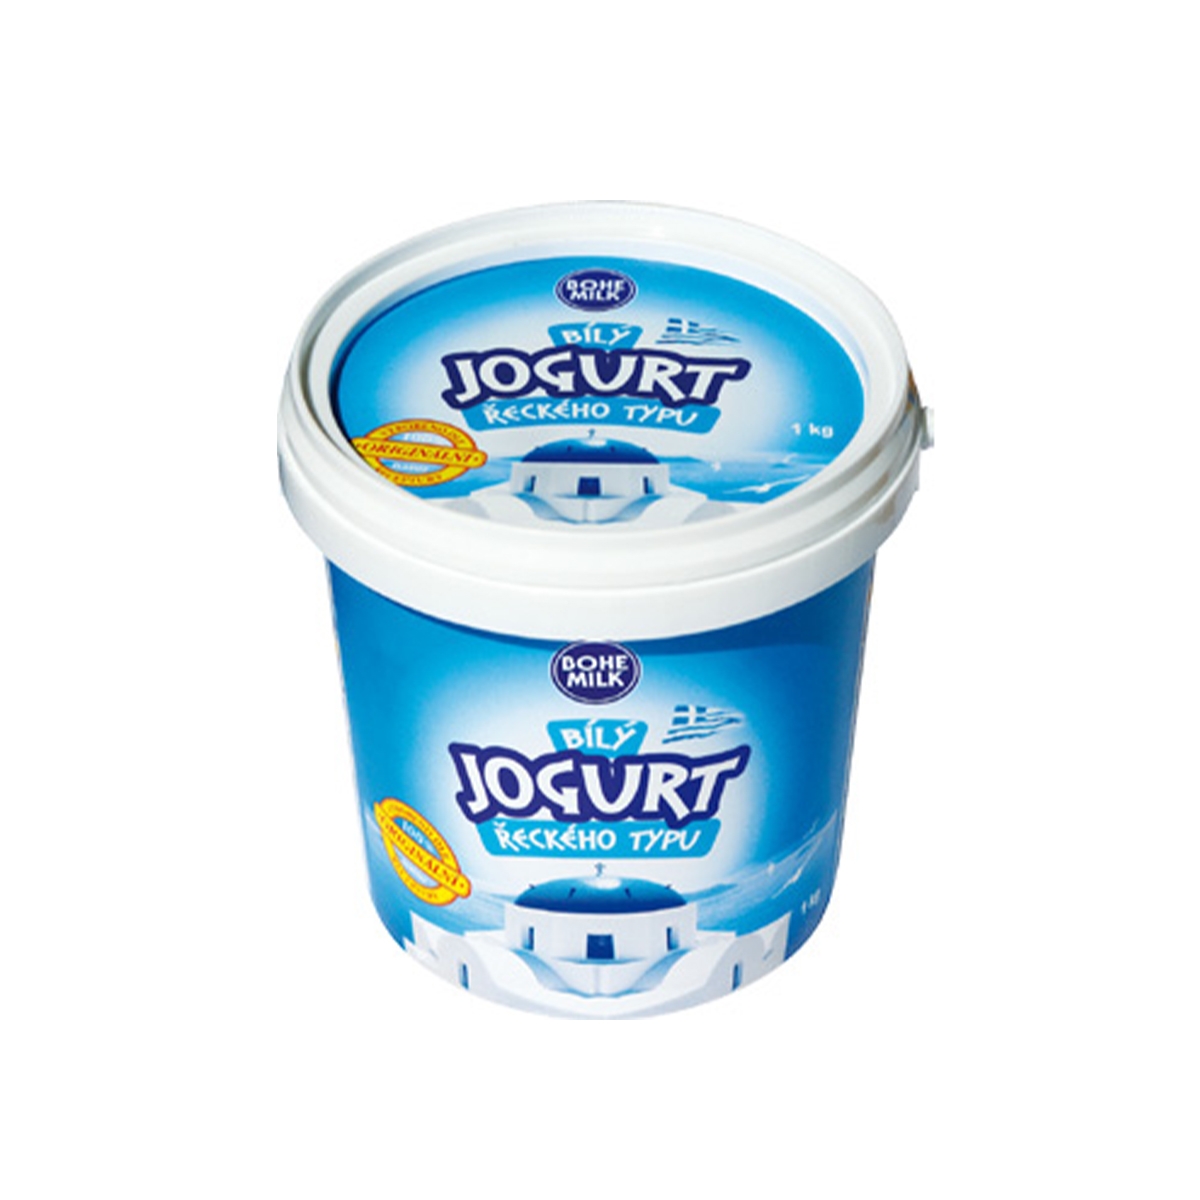 Bílý jogurt smetanový 1 kg